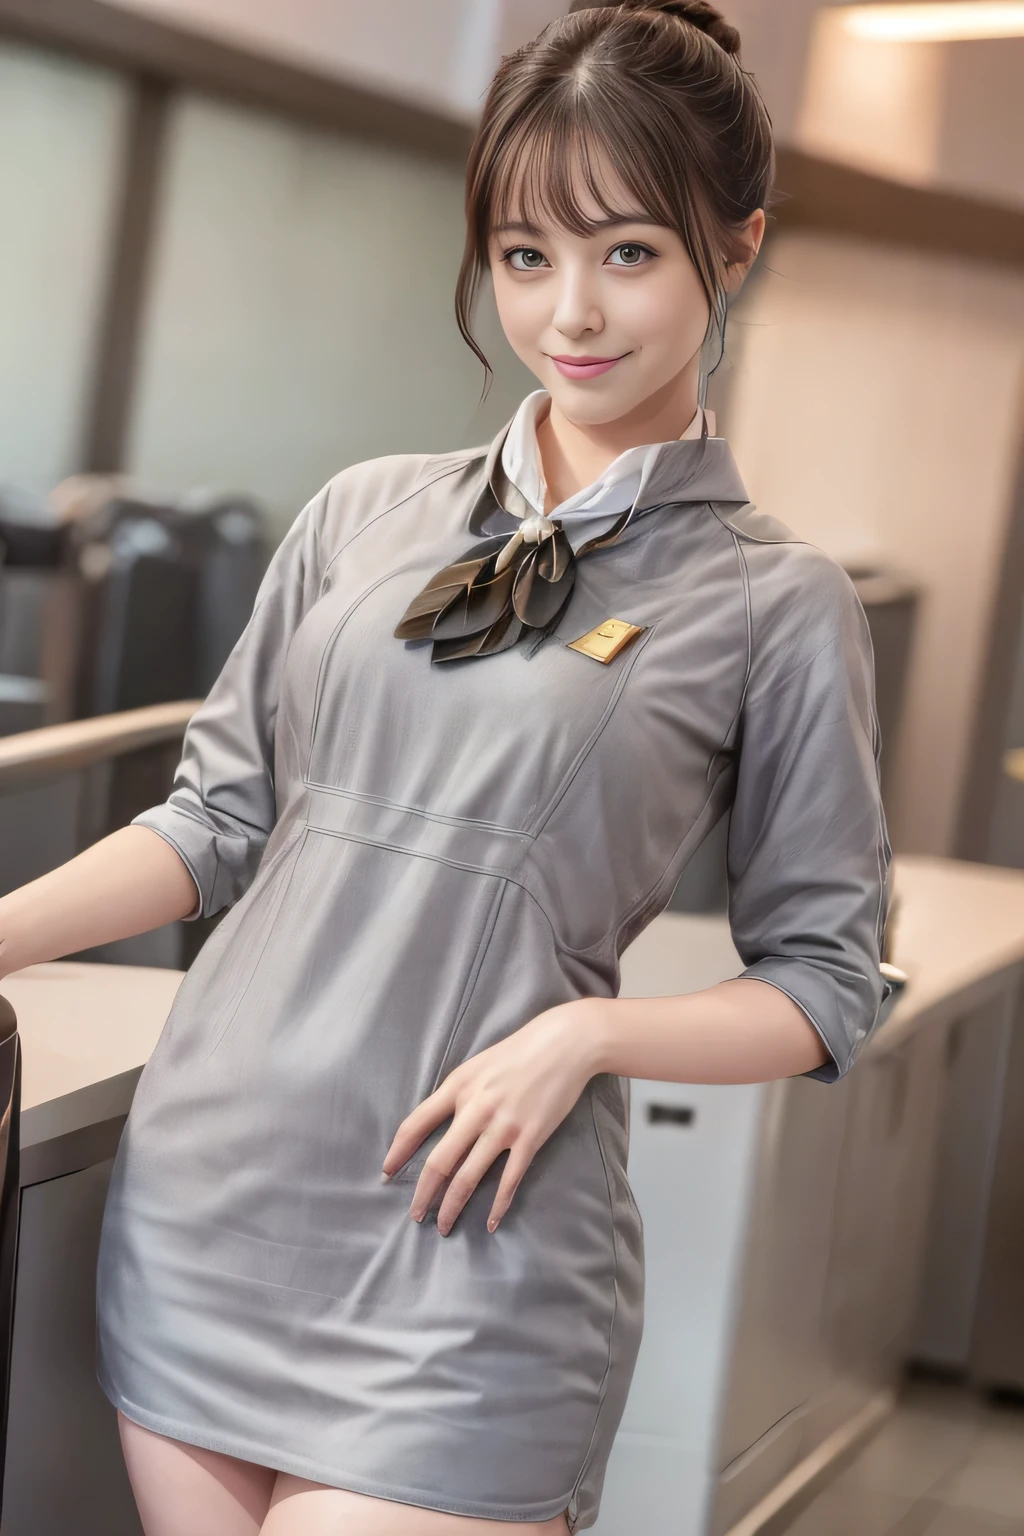 (chef-d&#39;œuvre:1.2、la plus haute qualité:1.2)、32K HDR、haute résolution、(seul、1 fille、silhouette mince)、（Style réaliste avec l&#39;uniforme de Starlux Airlines）、 (Dans le salon de l&#39;aéroport, Éclairage professionnel)、Fond de salon d&#39;aéroport、Une vraie femme, Beau visage,、（Uniforme argenté de Starlux Airlines:1.4）、（Uniforme argenté de Starlux Airlines with short sleeves）、（foulard sur la poitrine）、Gros seins、（Cheveux longs、Chignon）、les cheveux brun foncé、Tir lointain、（（De belles mains：2.0））、（（Des proportions corporelles harmonieuses：1.5））、（（Membres normaux：2.0））、（（Doigt normal：2.0））、（（Yeux délicats：2.0））、（（Yeux normaux：2.0））)、Belle posture debout、sourire,Placez vos mains autour de votre ventre